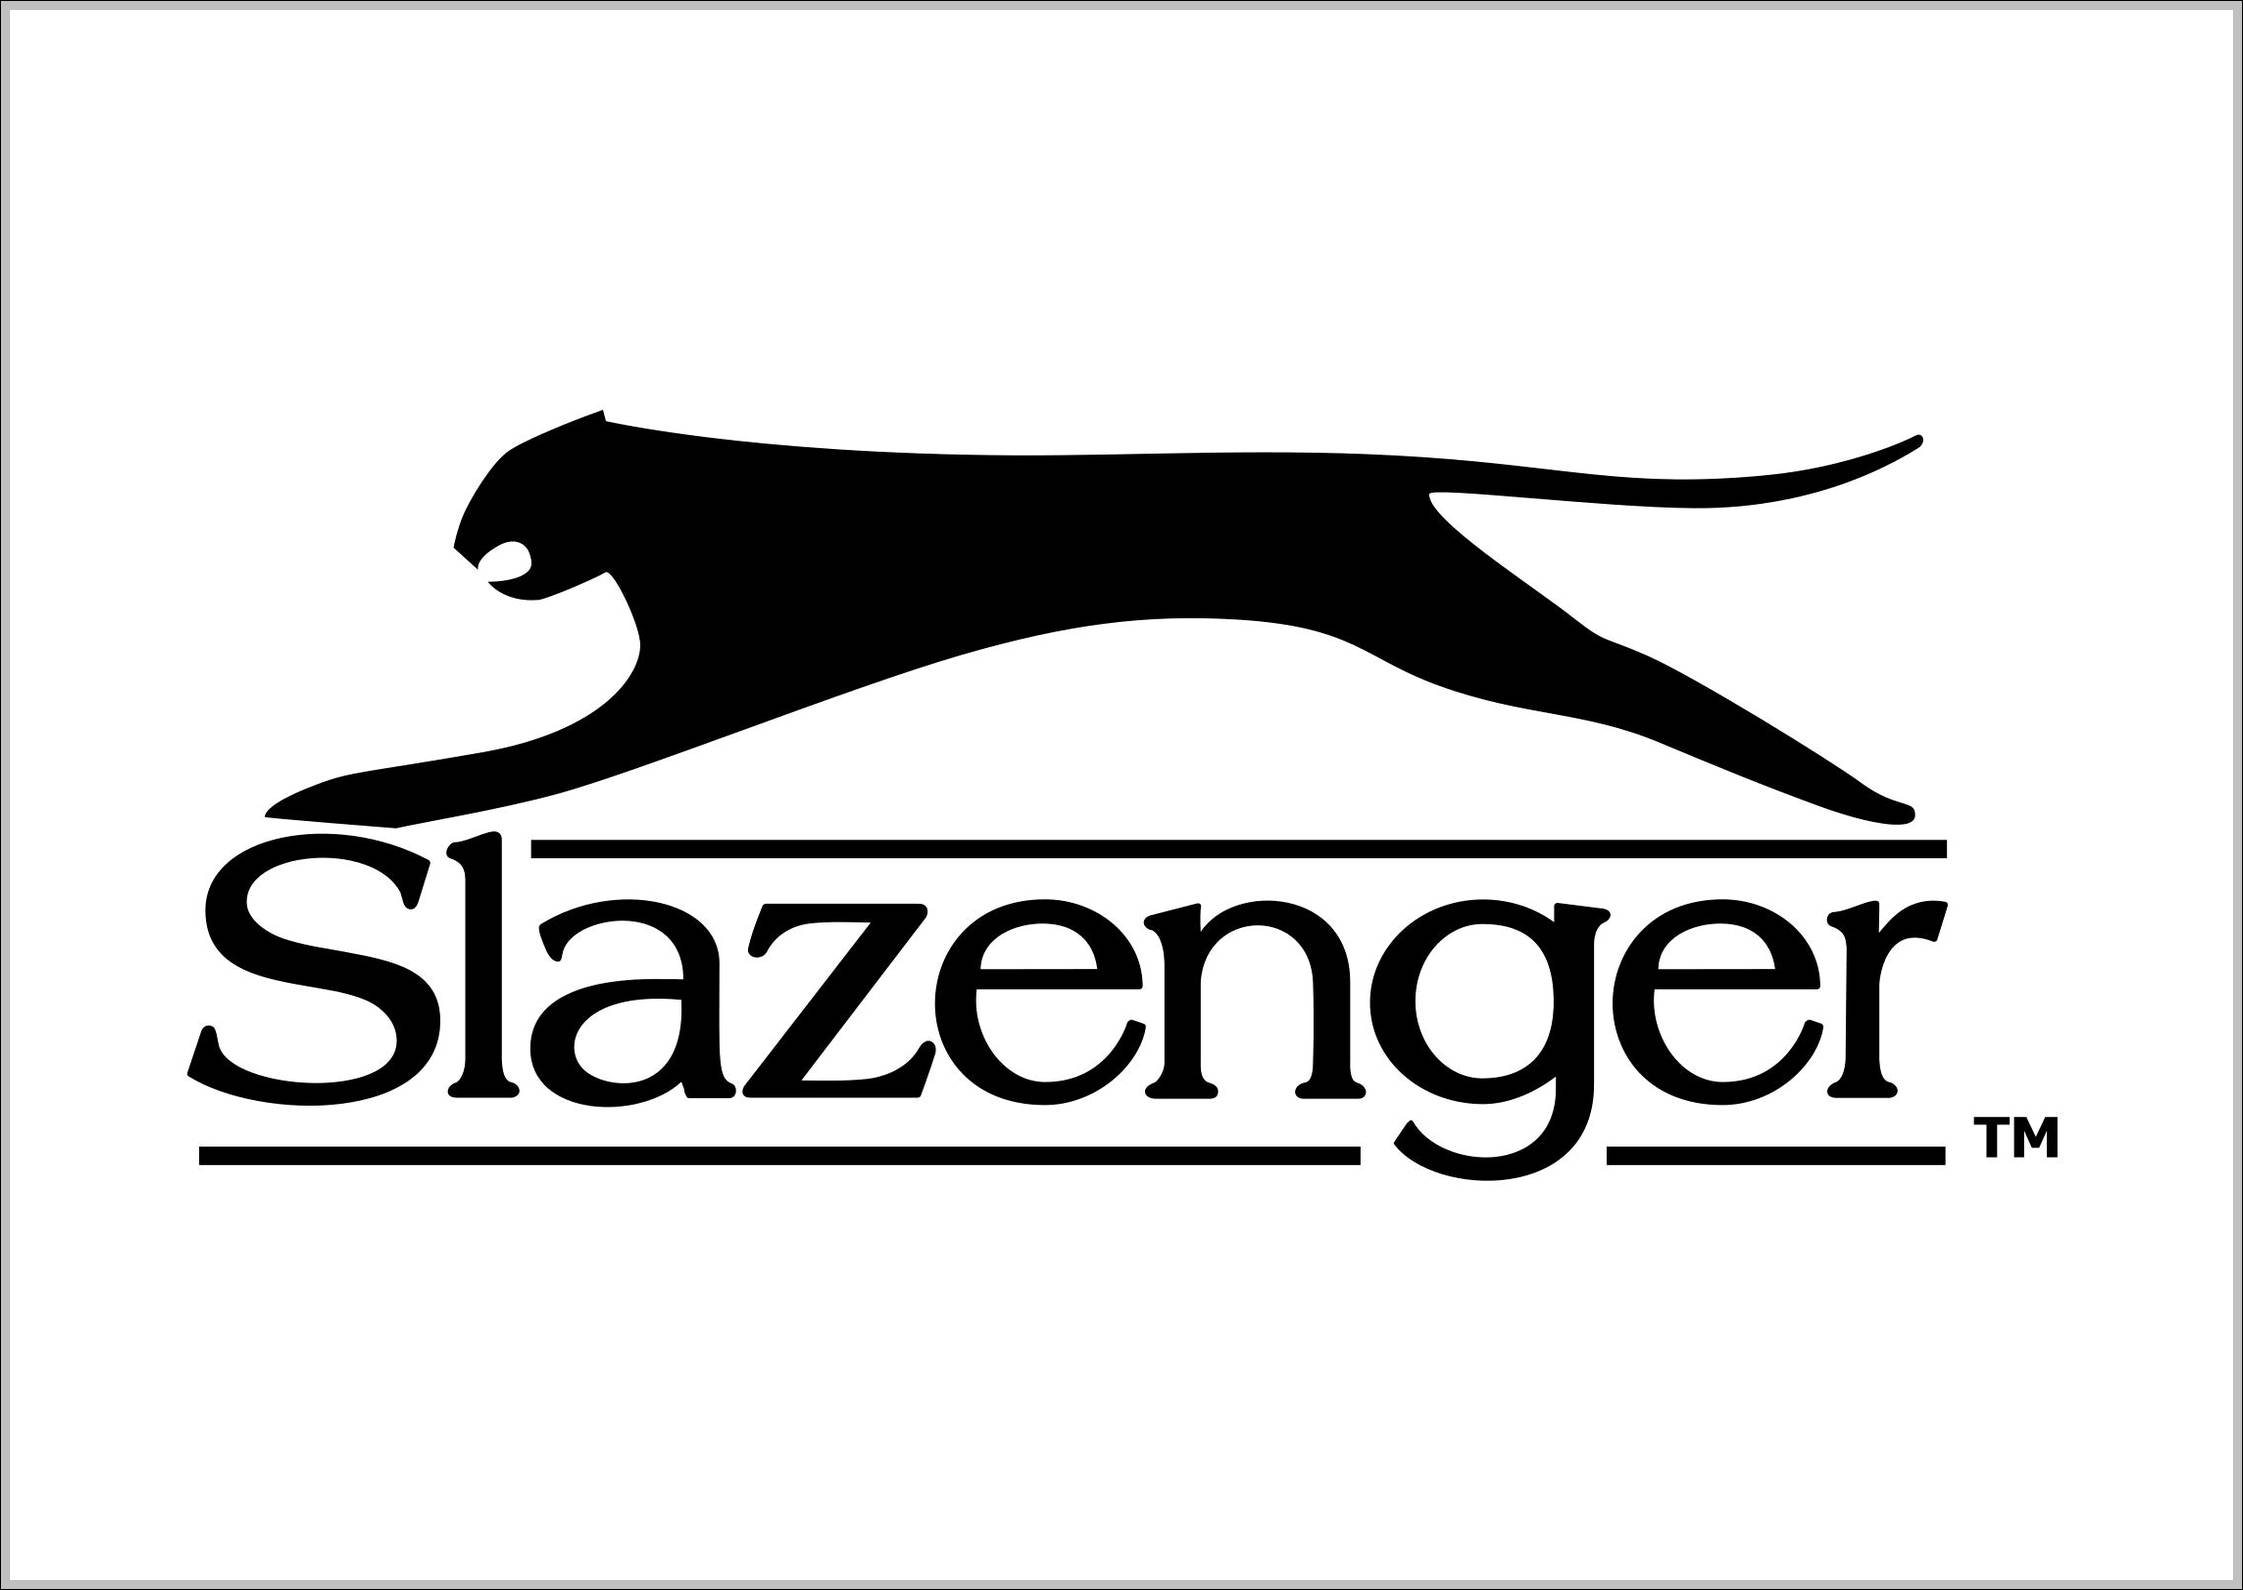 Slazenger sign